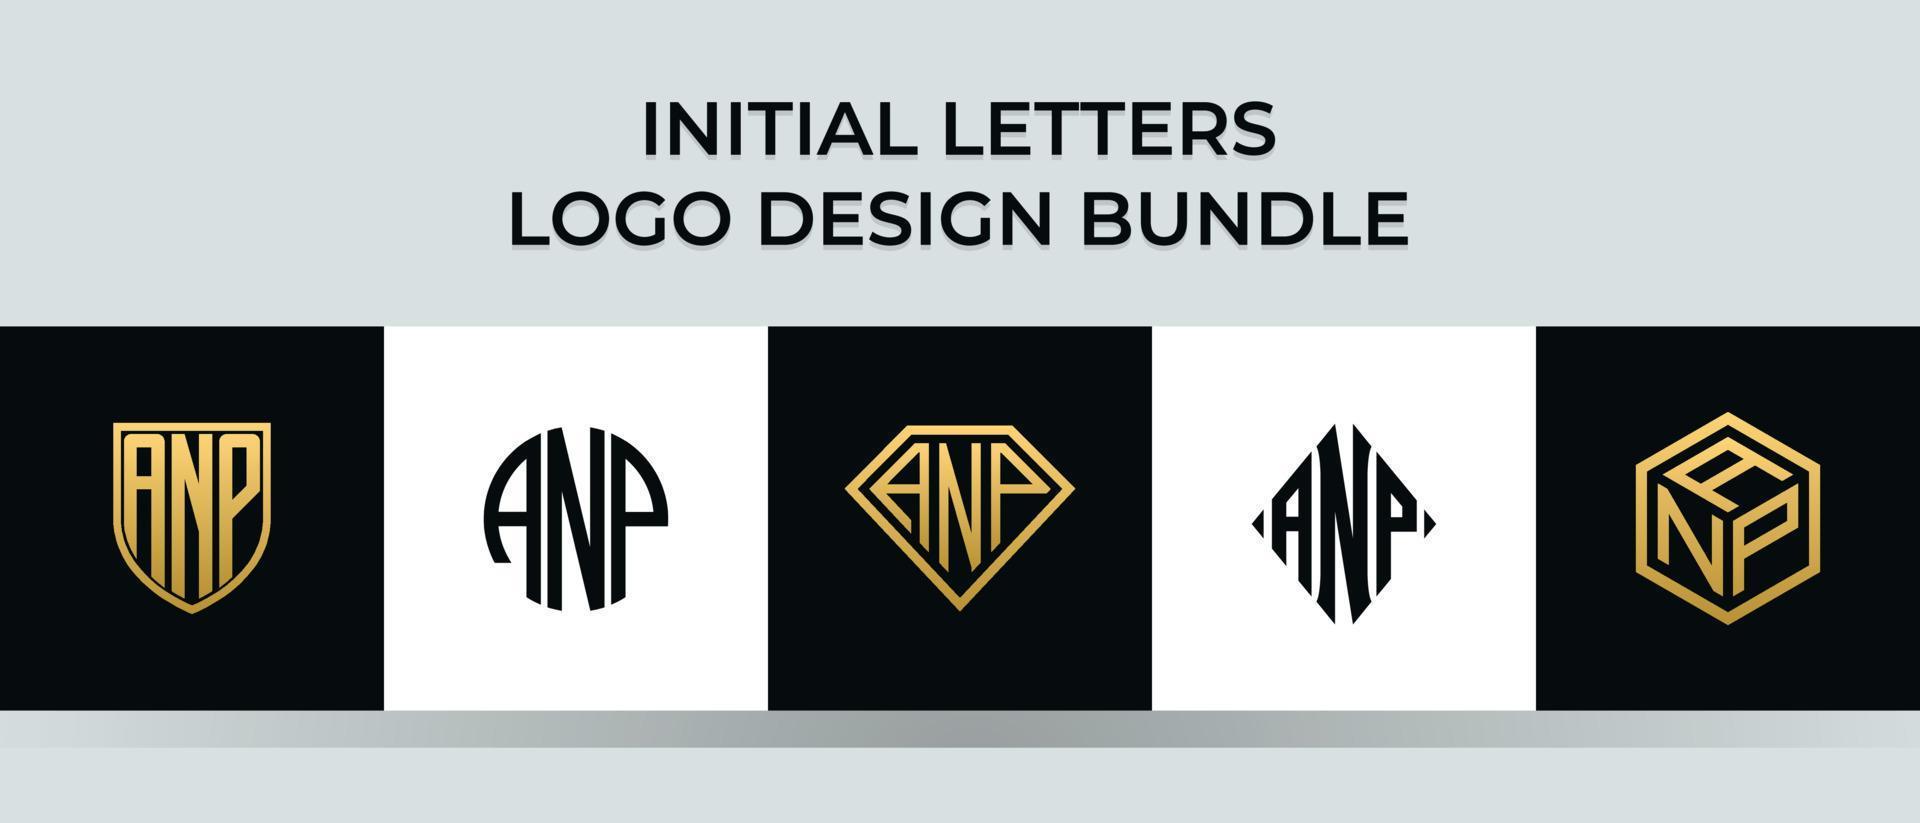 Initial letters ANP logo designs Bundle vector